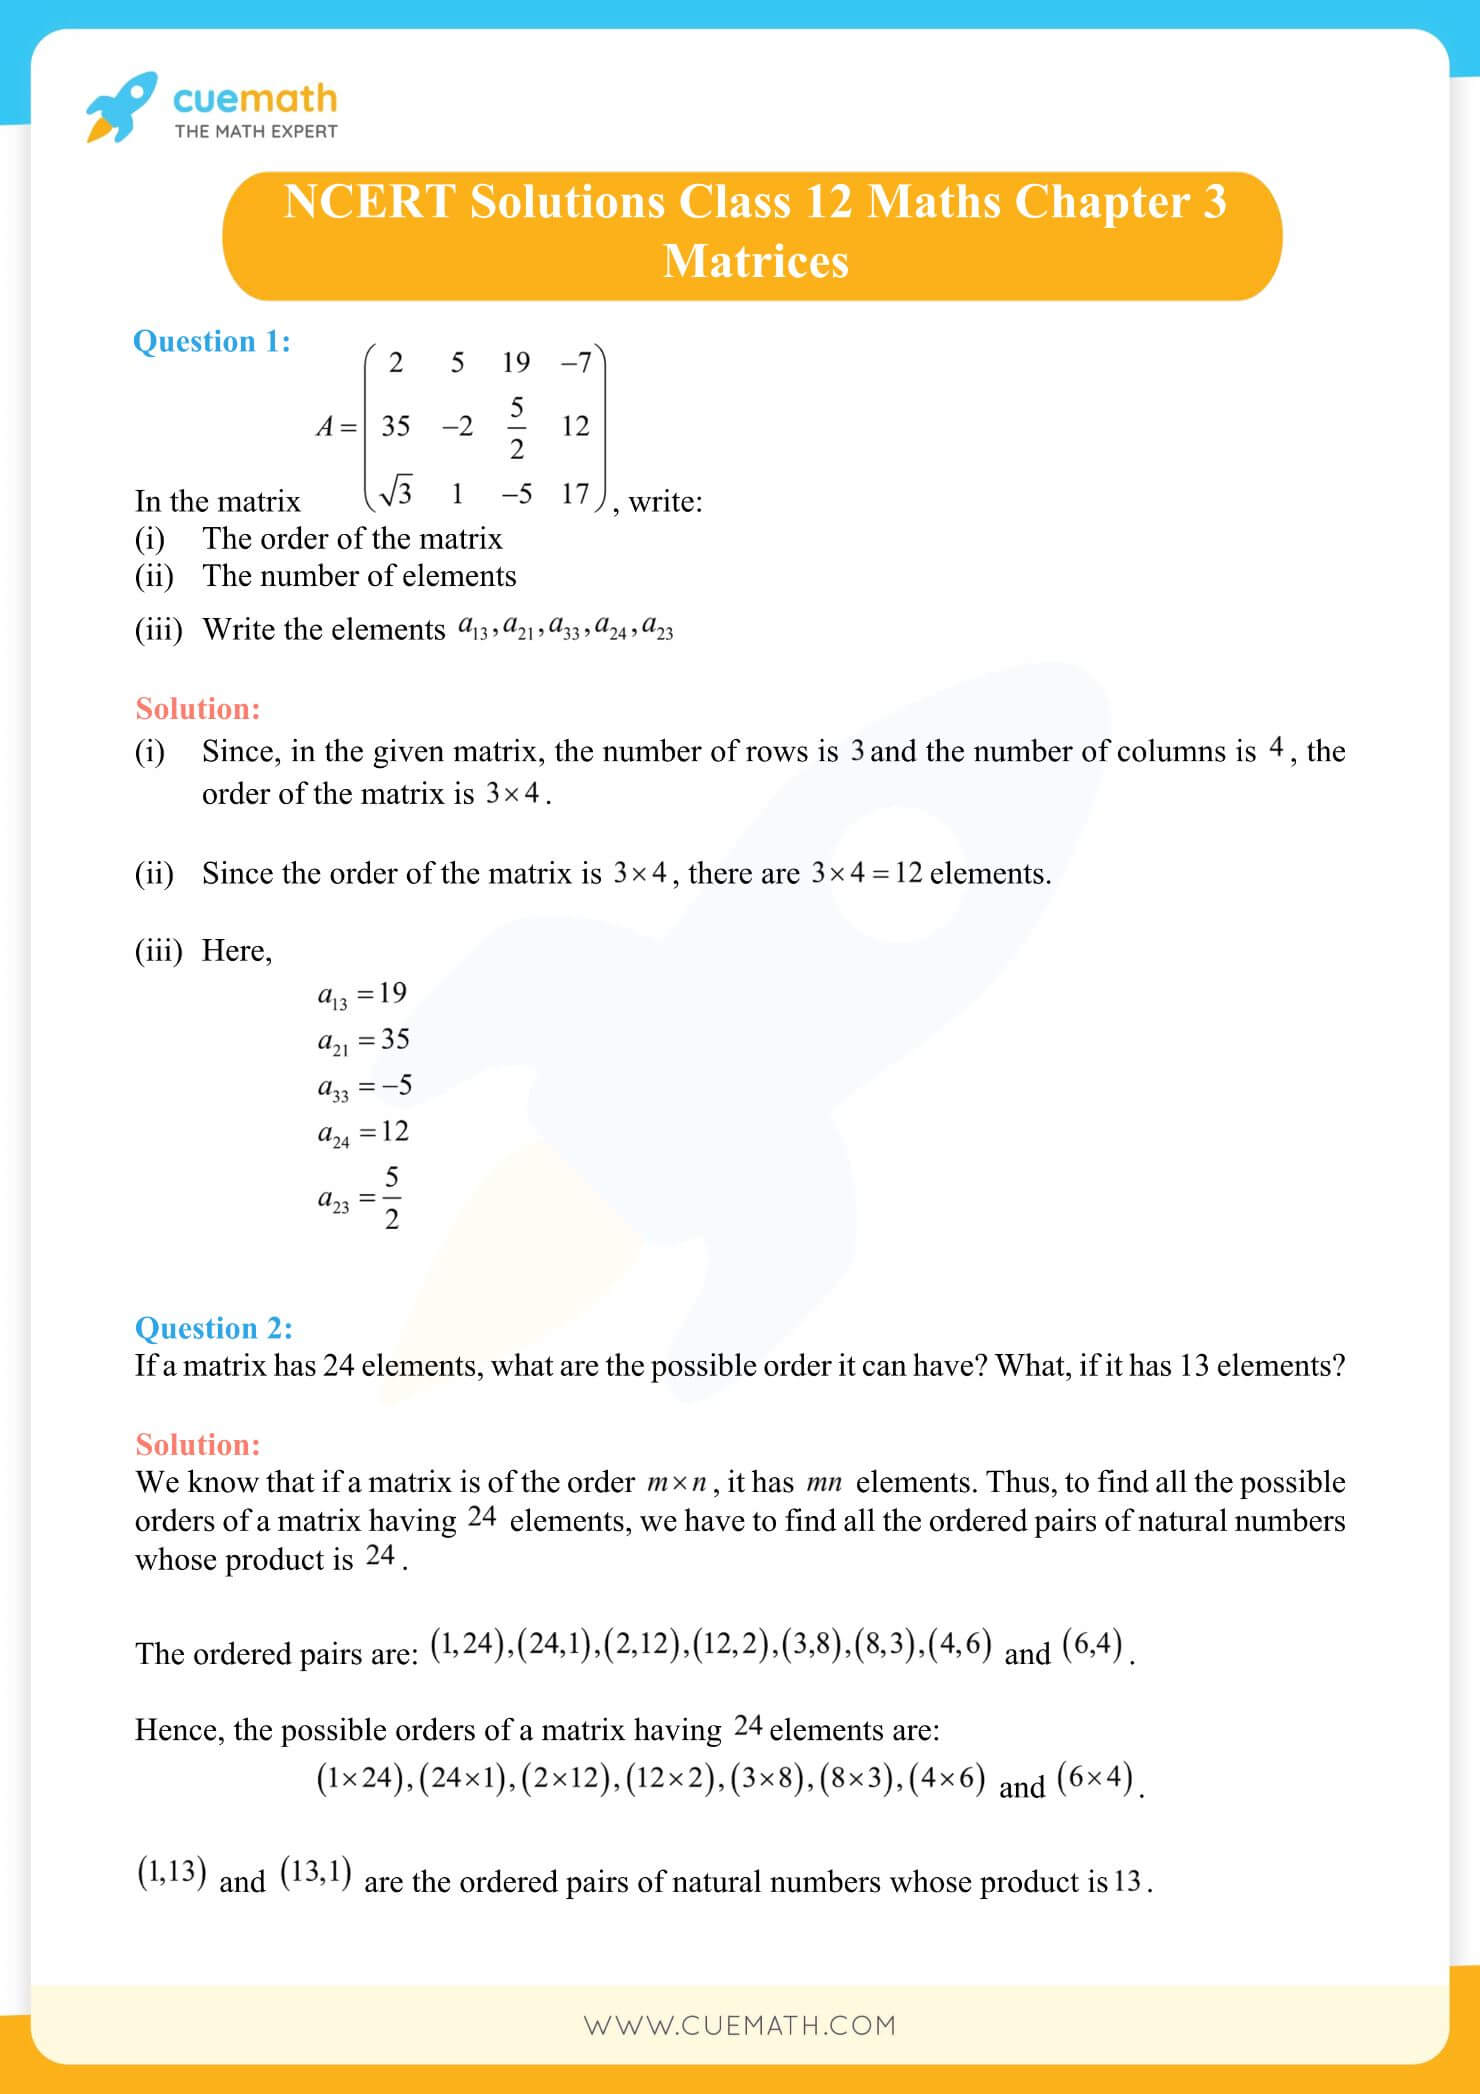 NCERT Solutions Class 12 Maths Chapter 3 Ex 3.1 1